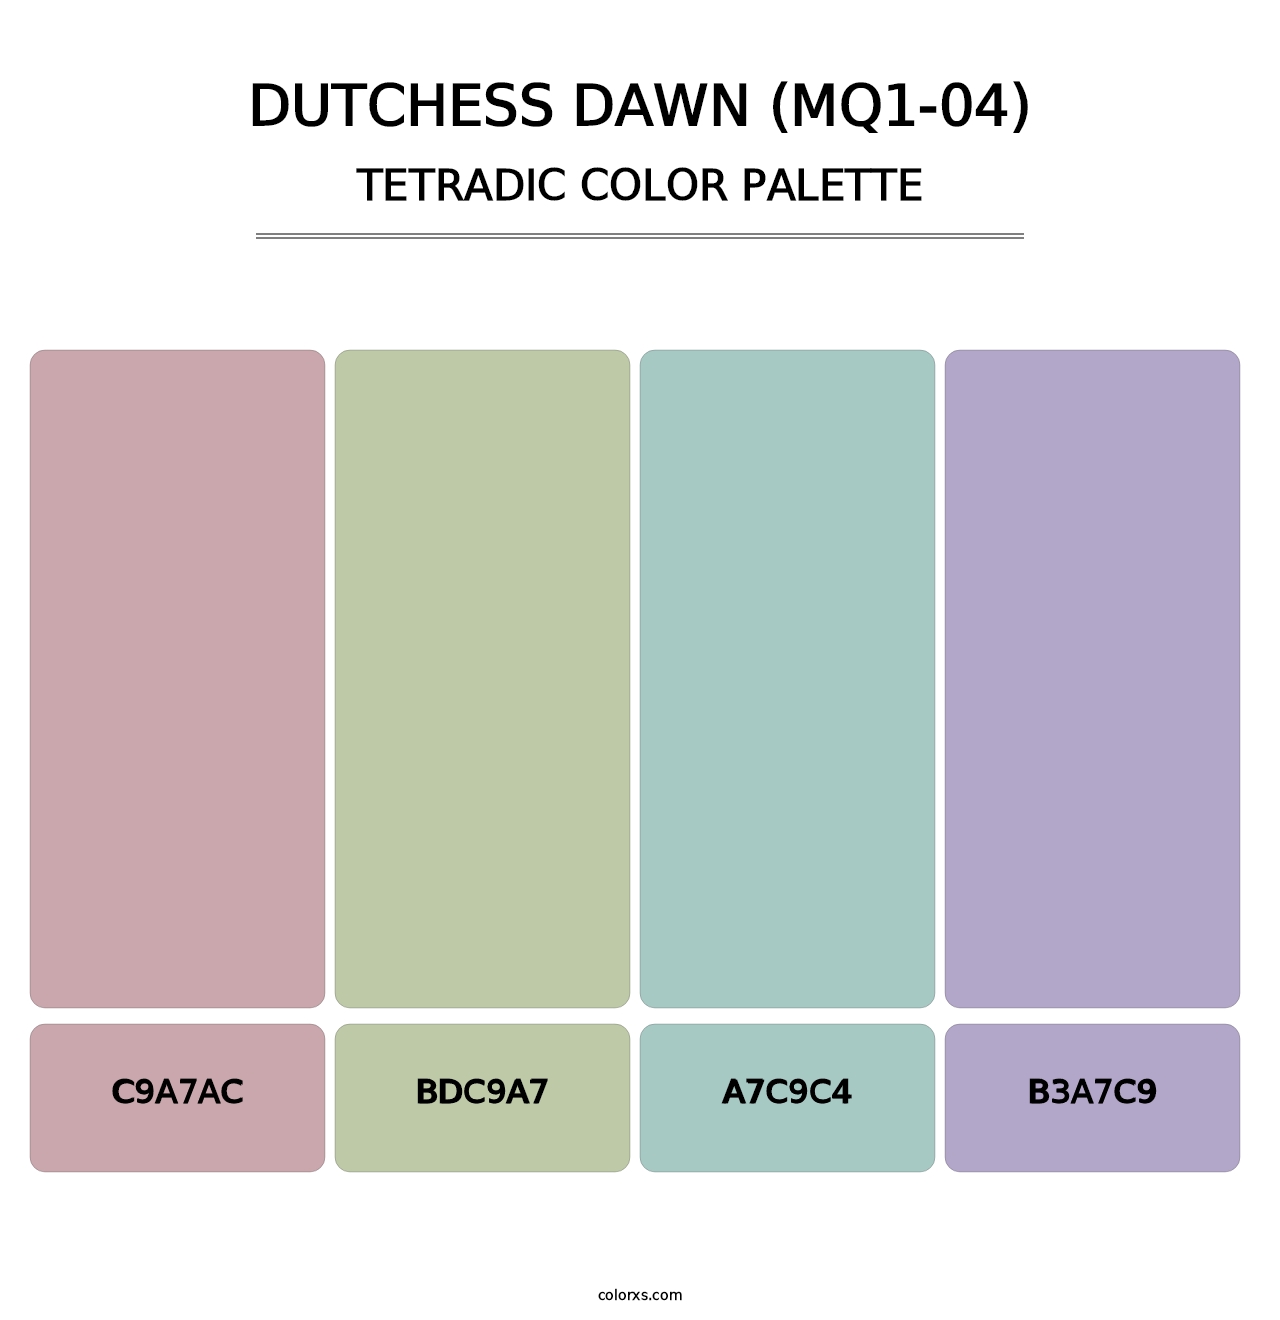 Dutchess Dawn (MQ1-04) - Tetradic Color Palette